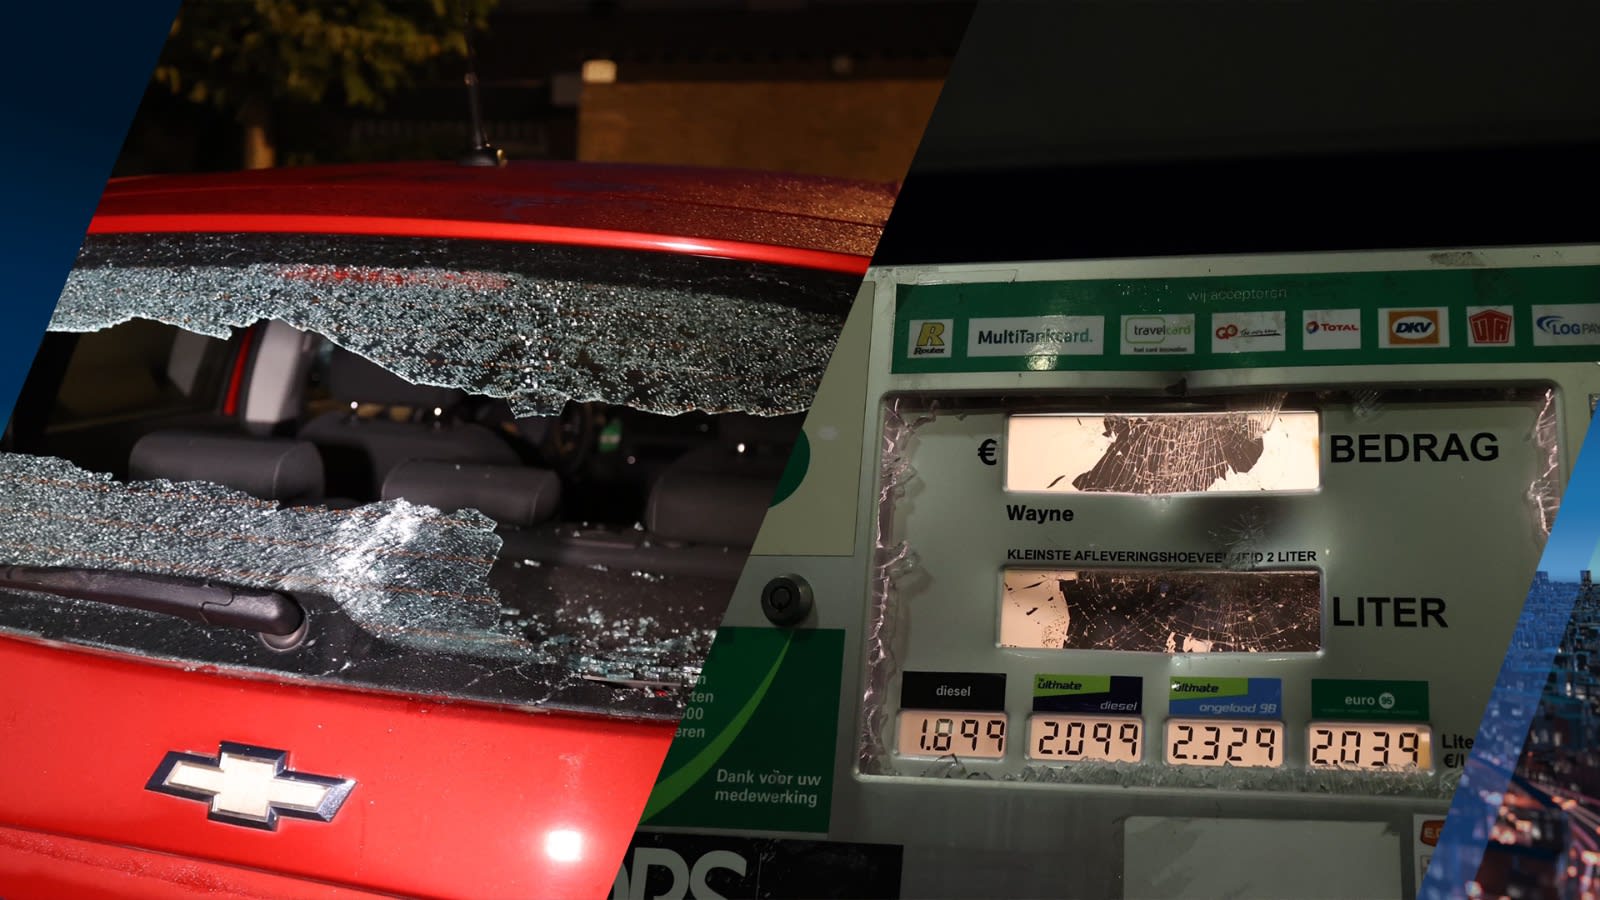 Geldautomaten, tankstations en auto's aan gort geslagen in Den Bosch